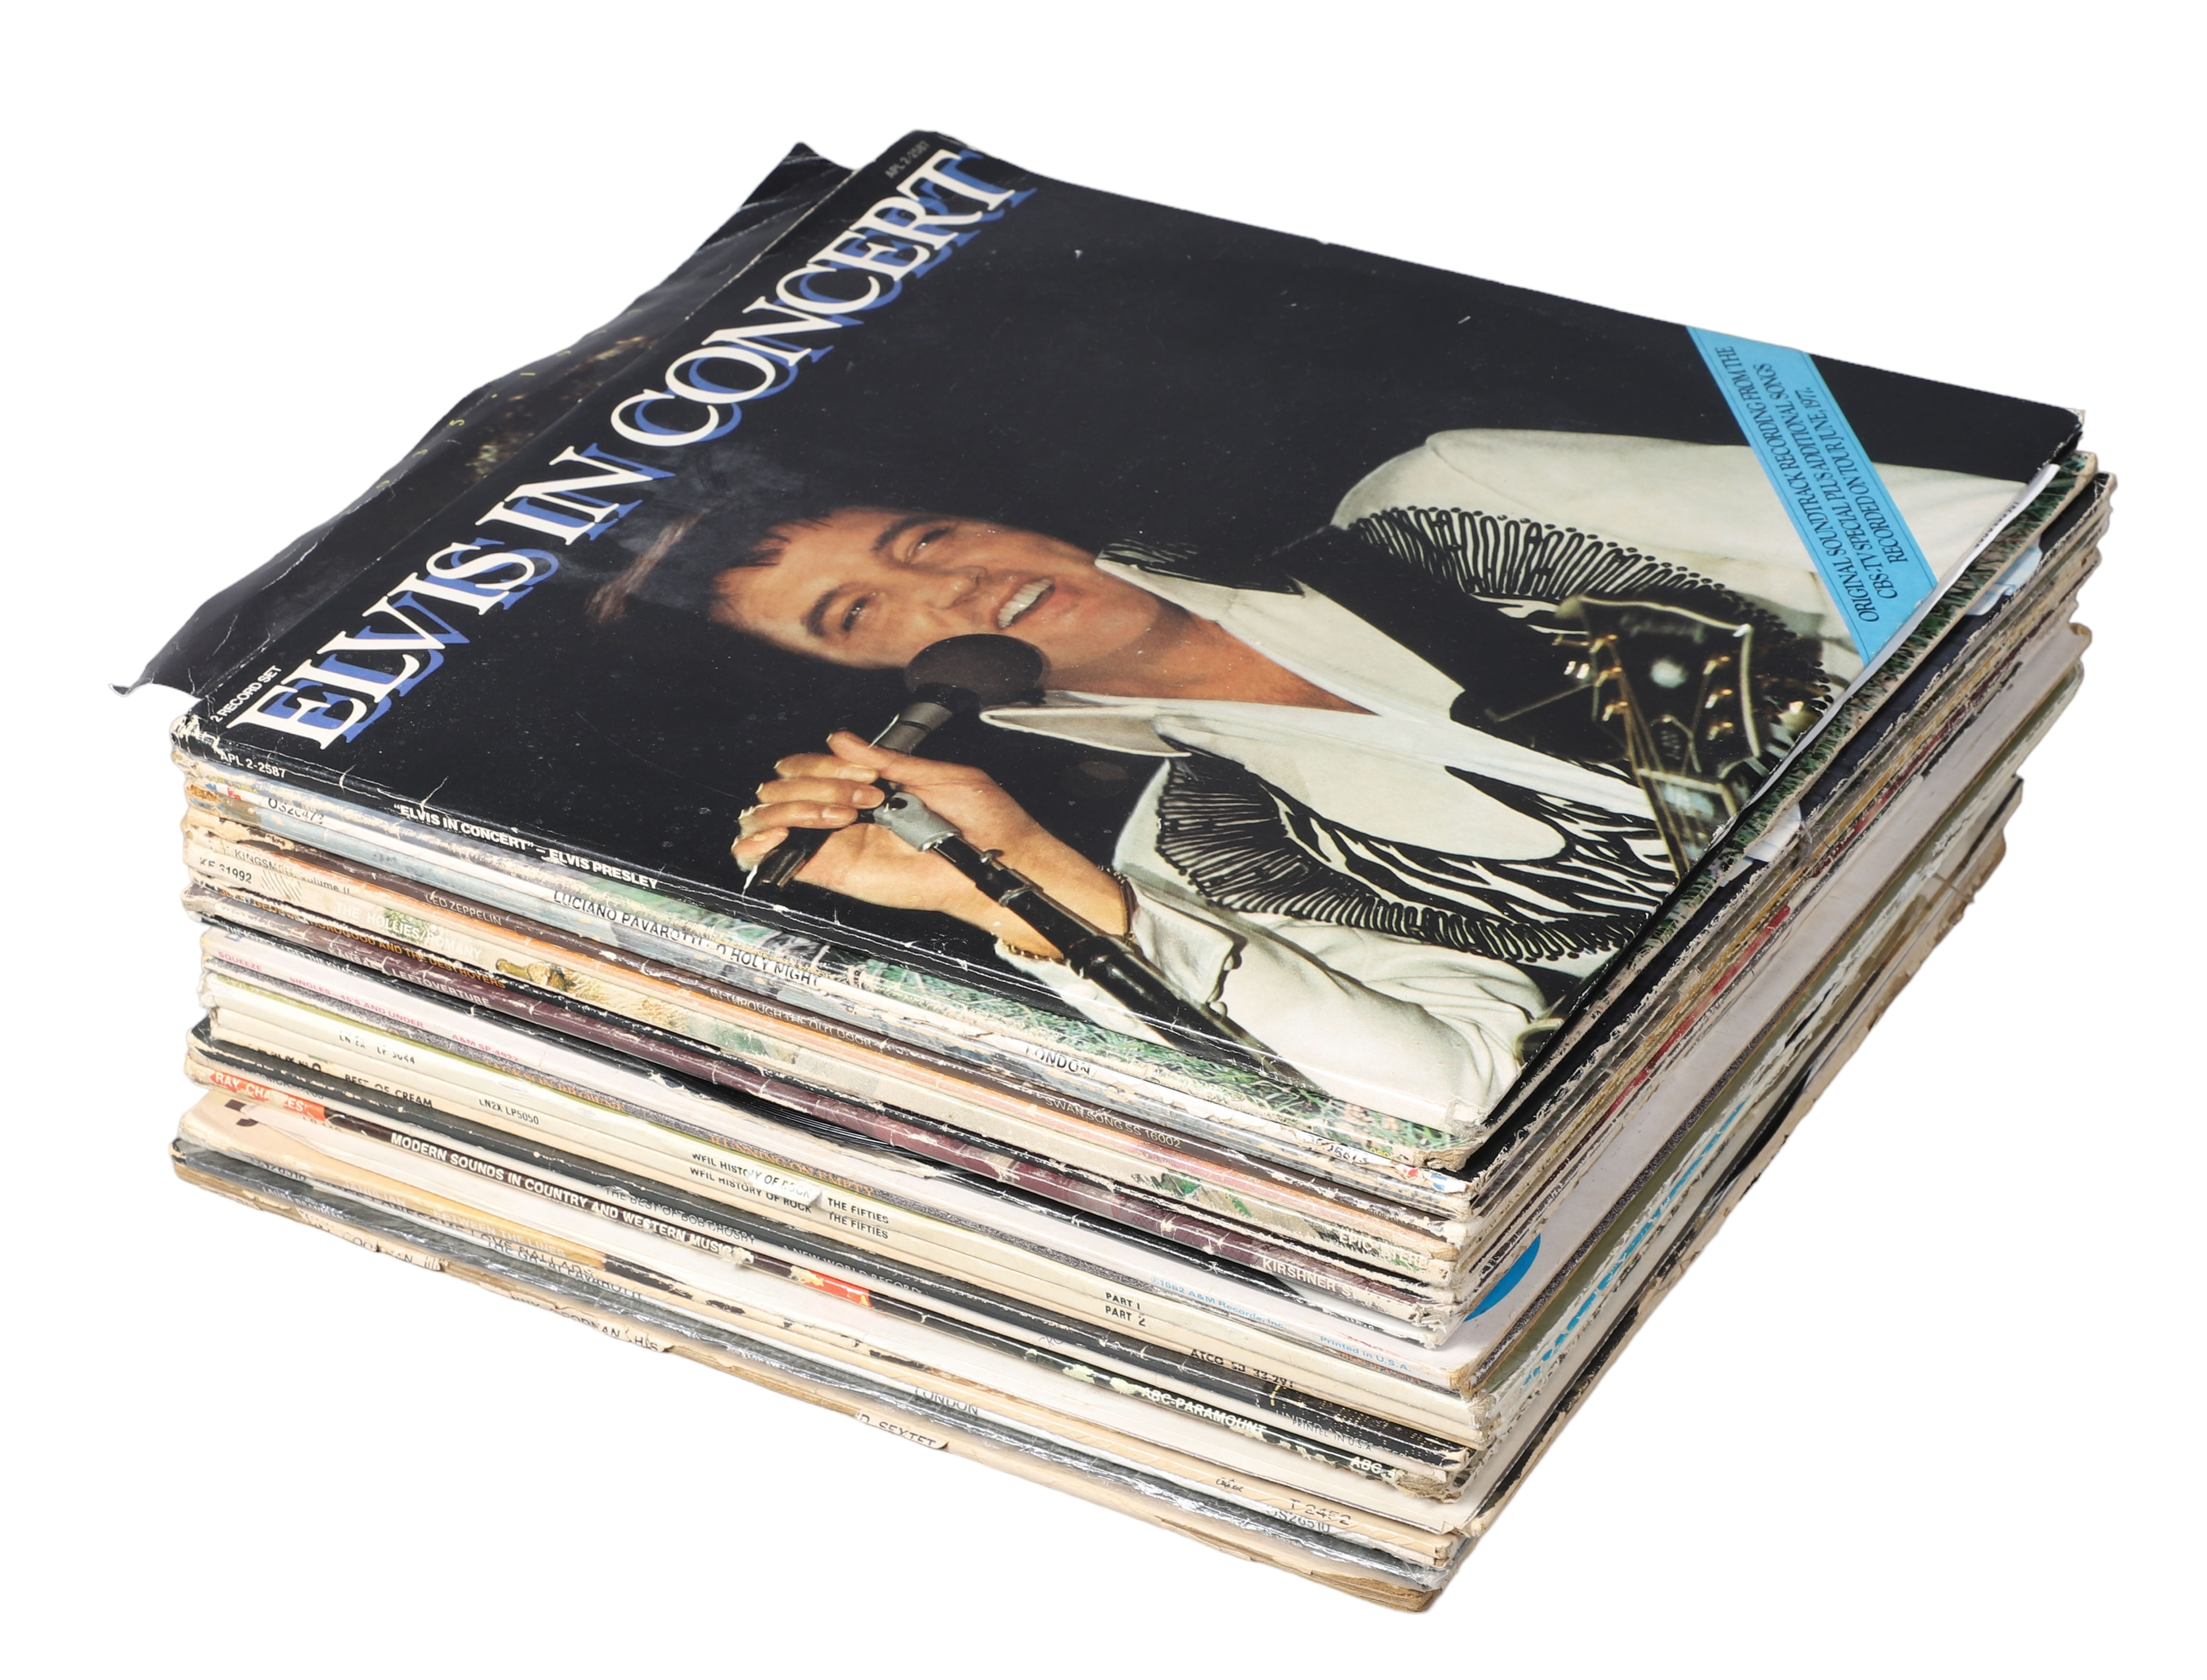  25 Vinyl LP record albums including 2e20ce